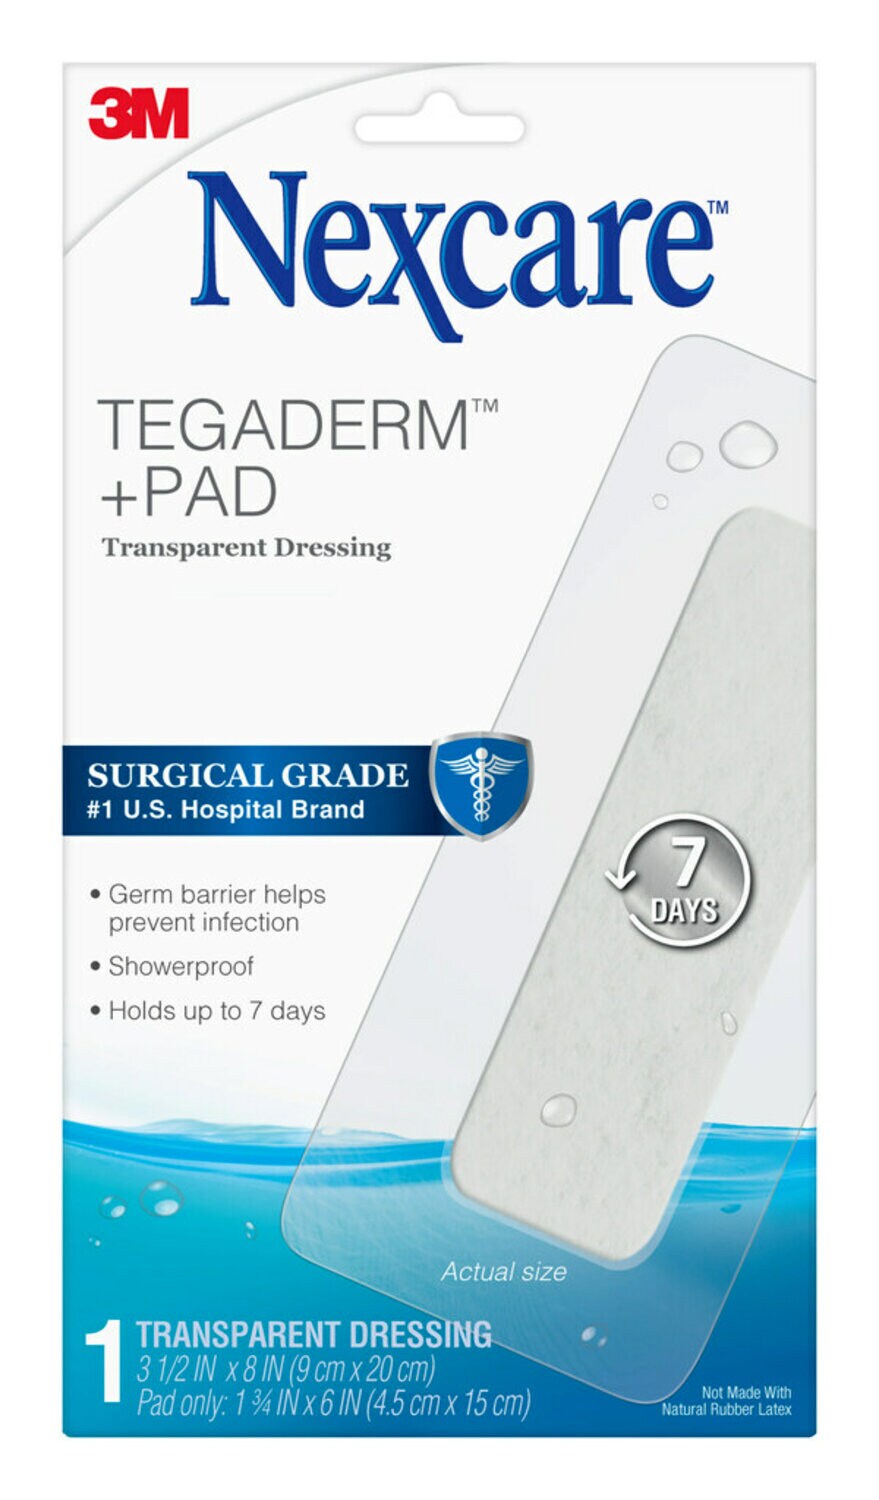 7100283310 - Nexcare Tegaderm + Pad Transparent Dressing W3590, 3 1/2 in x 8 in, (9 cm x 20 cm)